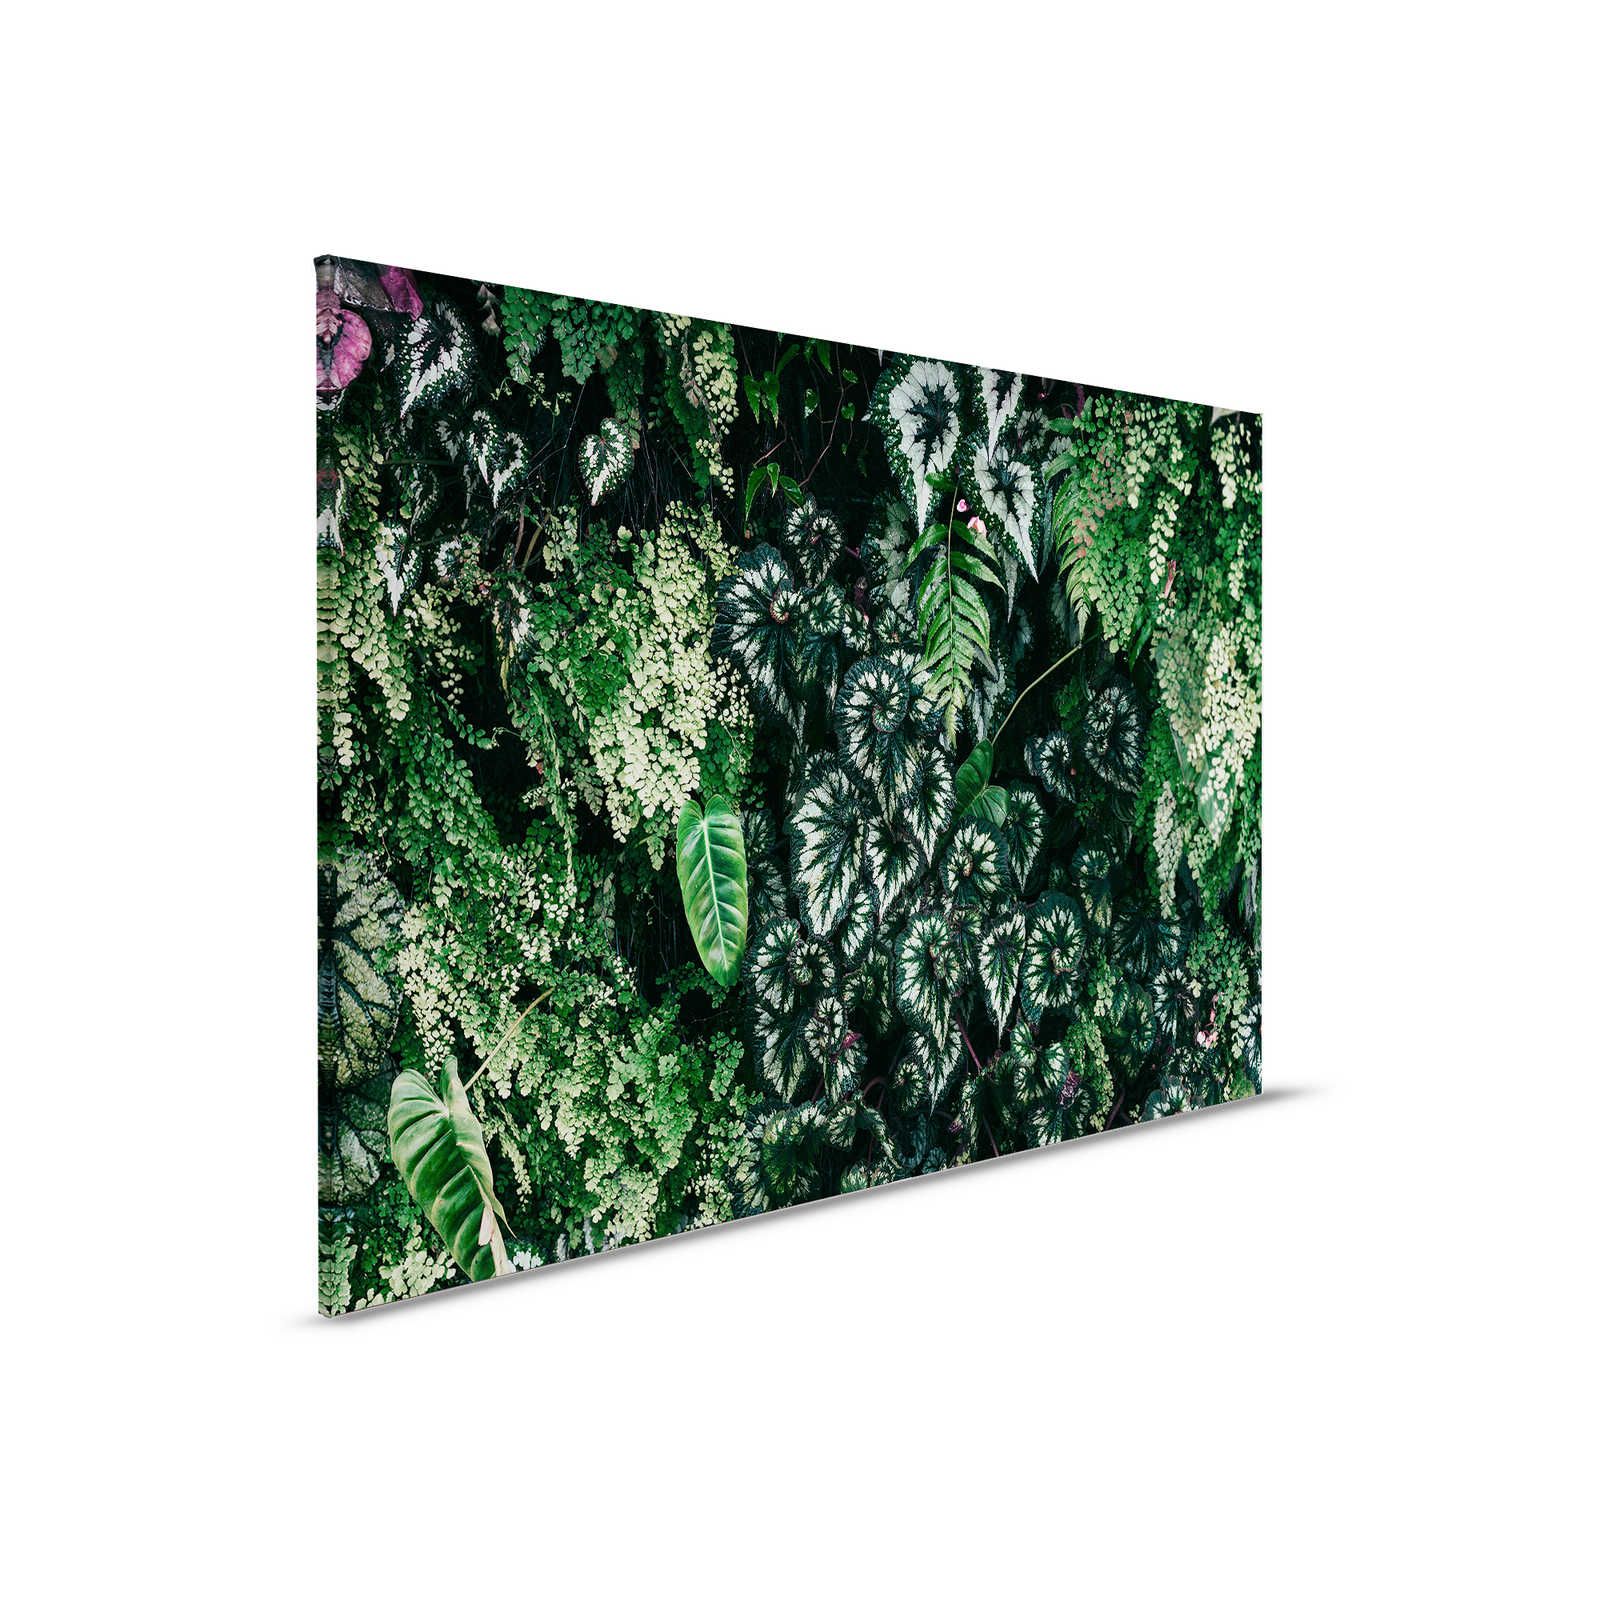 Deep Green 2 - Pintura sobre lienzo Matorral de follaje, helechos y plantas colgantes - 0,90 m x 0,60 m
